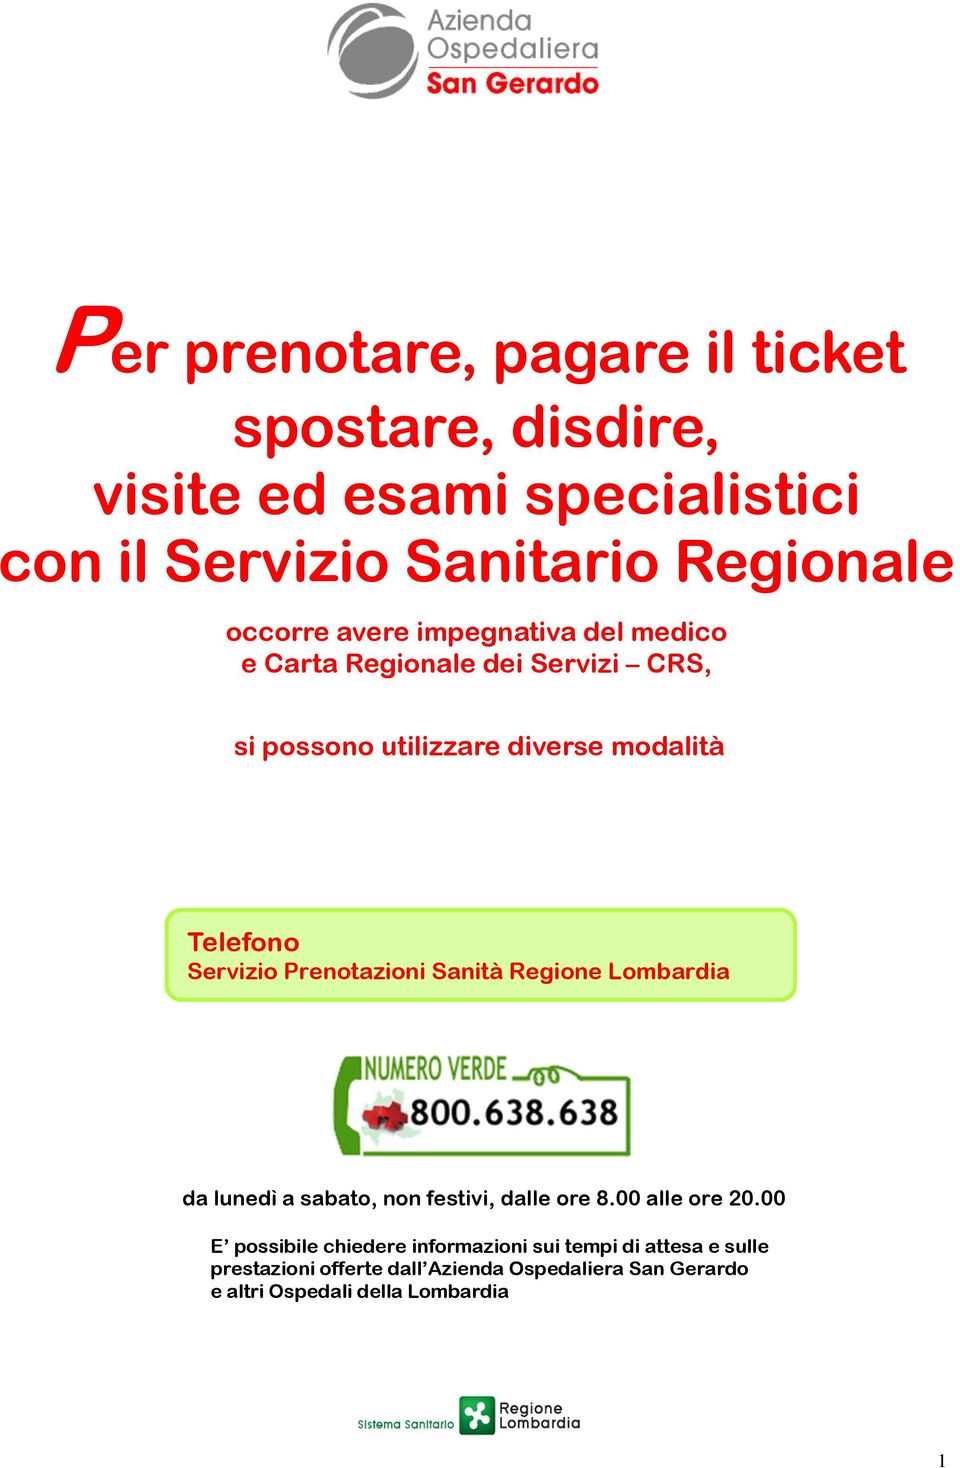 Prenotazioni Sanità Regione Lombardia da lunedì a sabato, non festivi, dalle ore 8.00 alle ore 20.